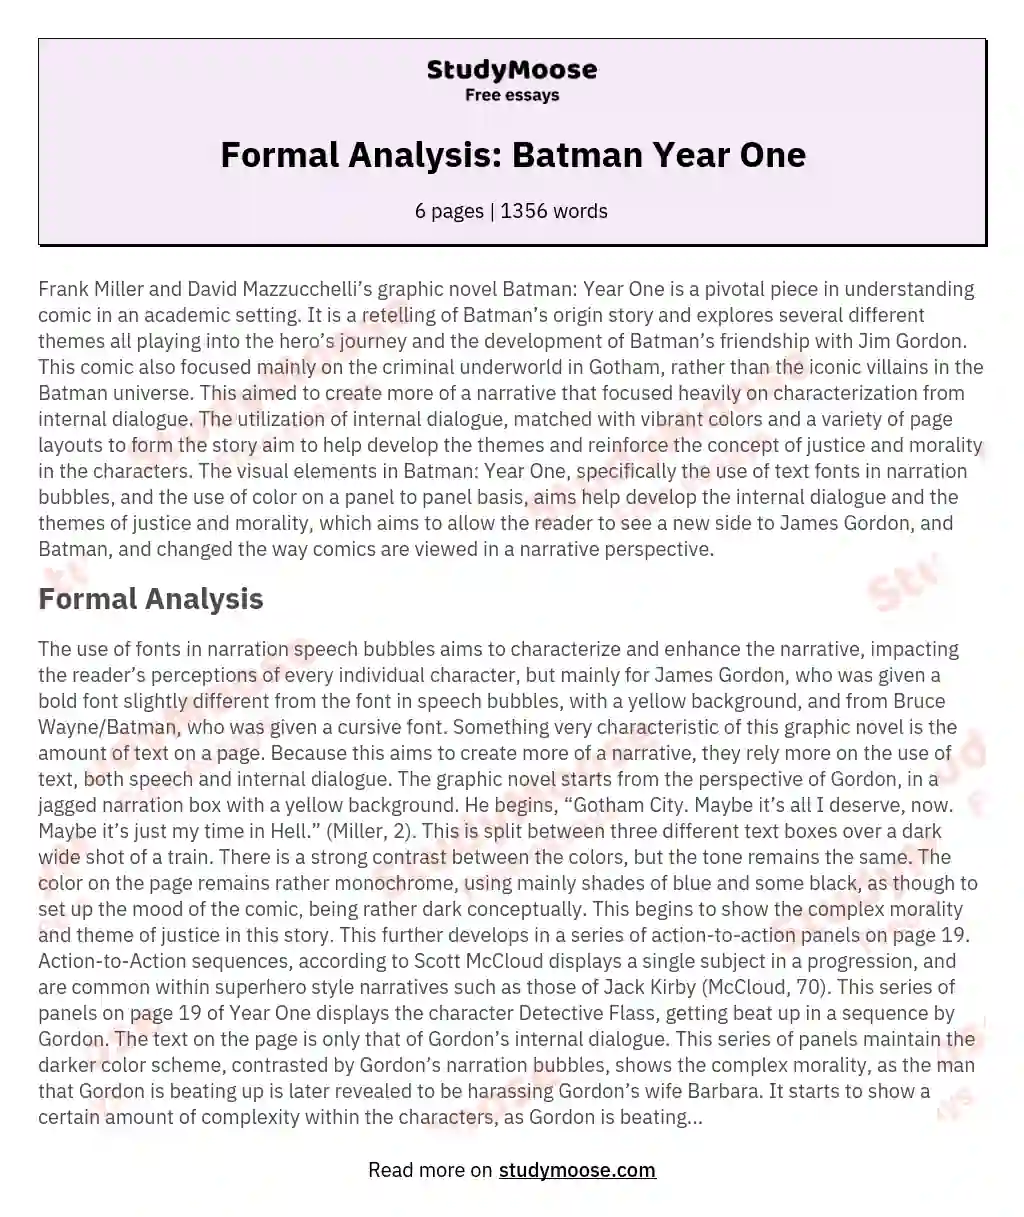 Formal Analysis: Batman Year One essay